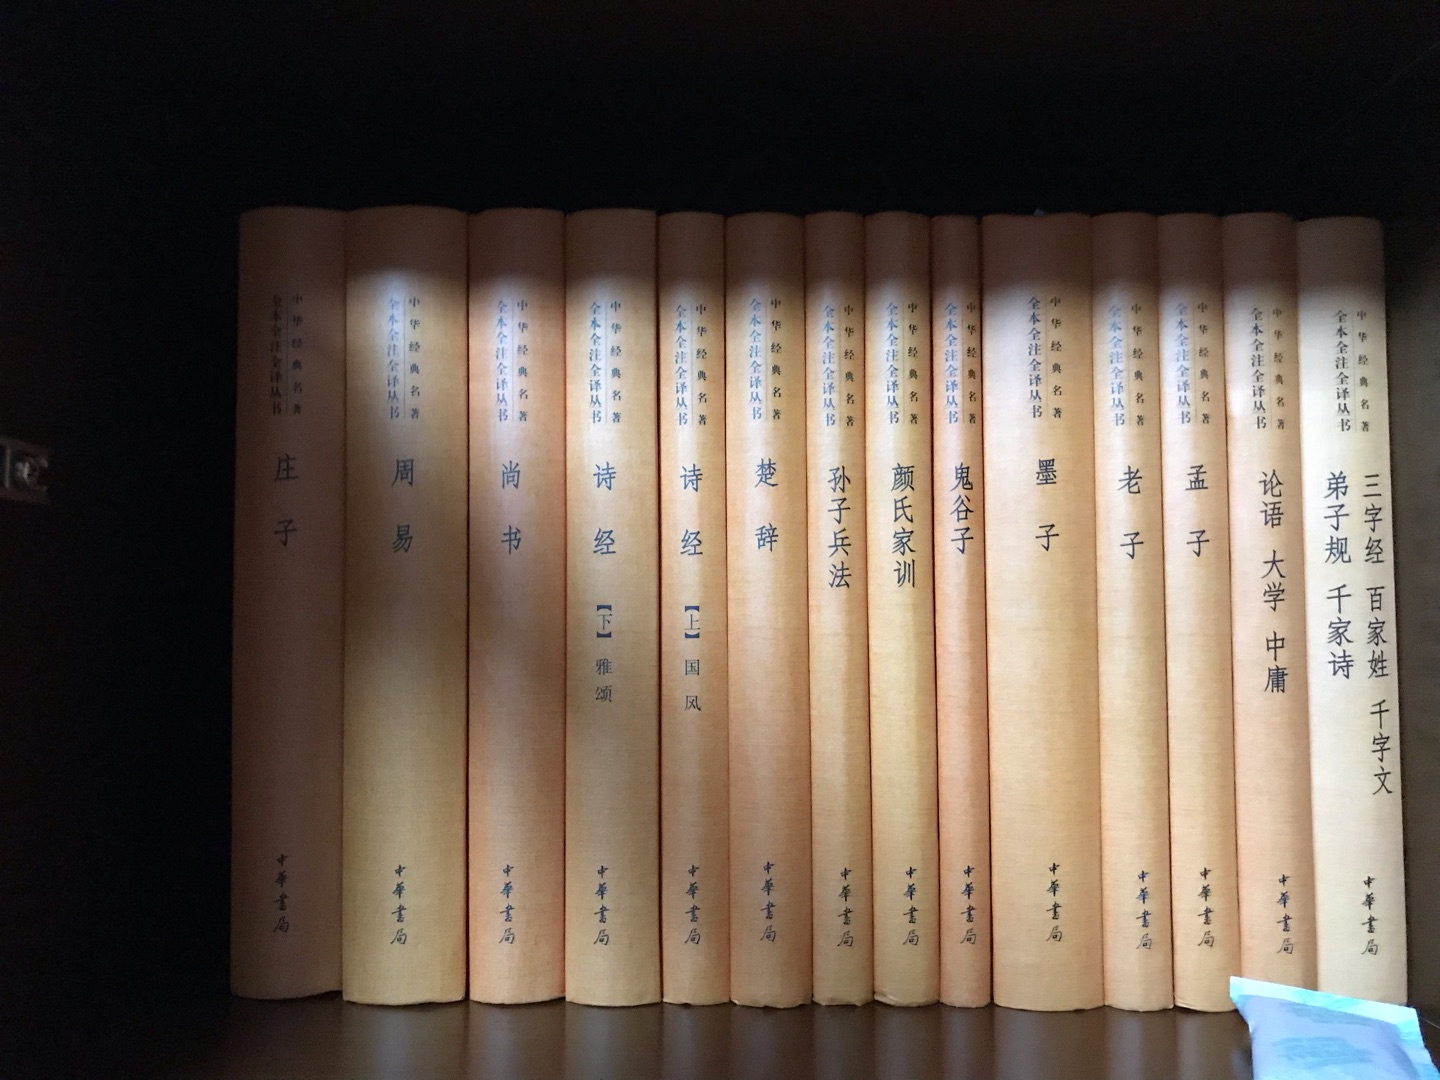 中华书局的三全系列还是很不错的，之前买过平装本，现在买精装版收藏，如果包装能更好些就完美了。